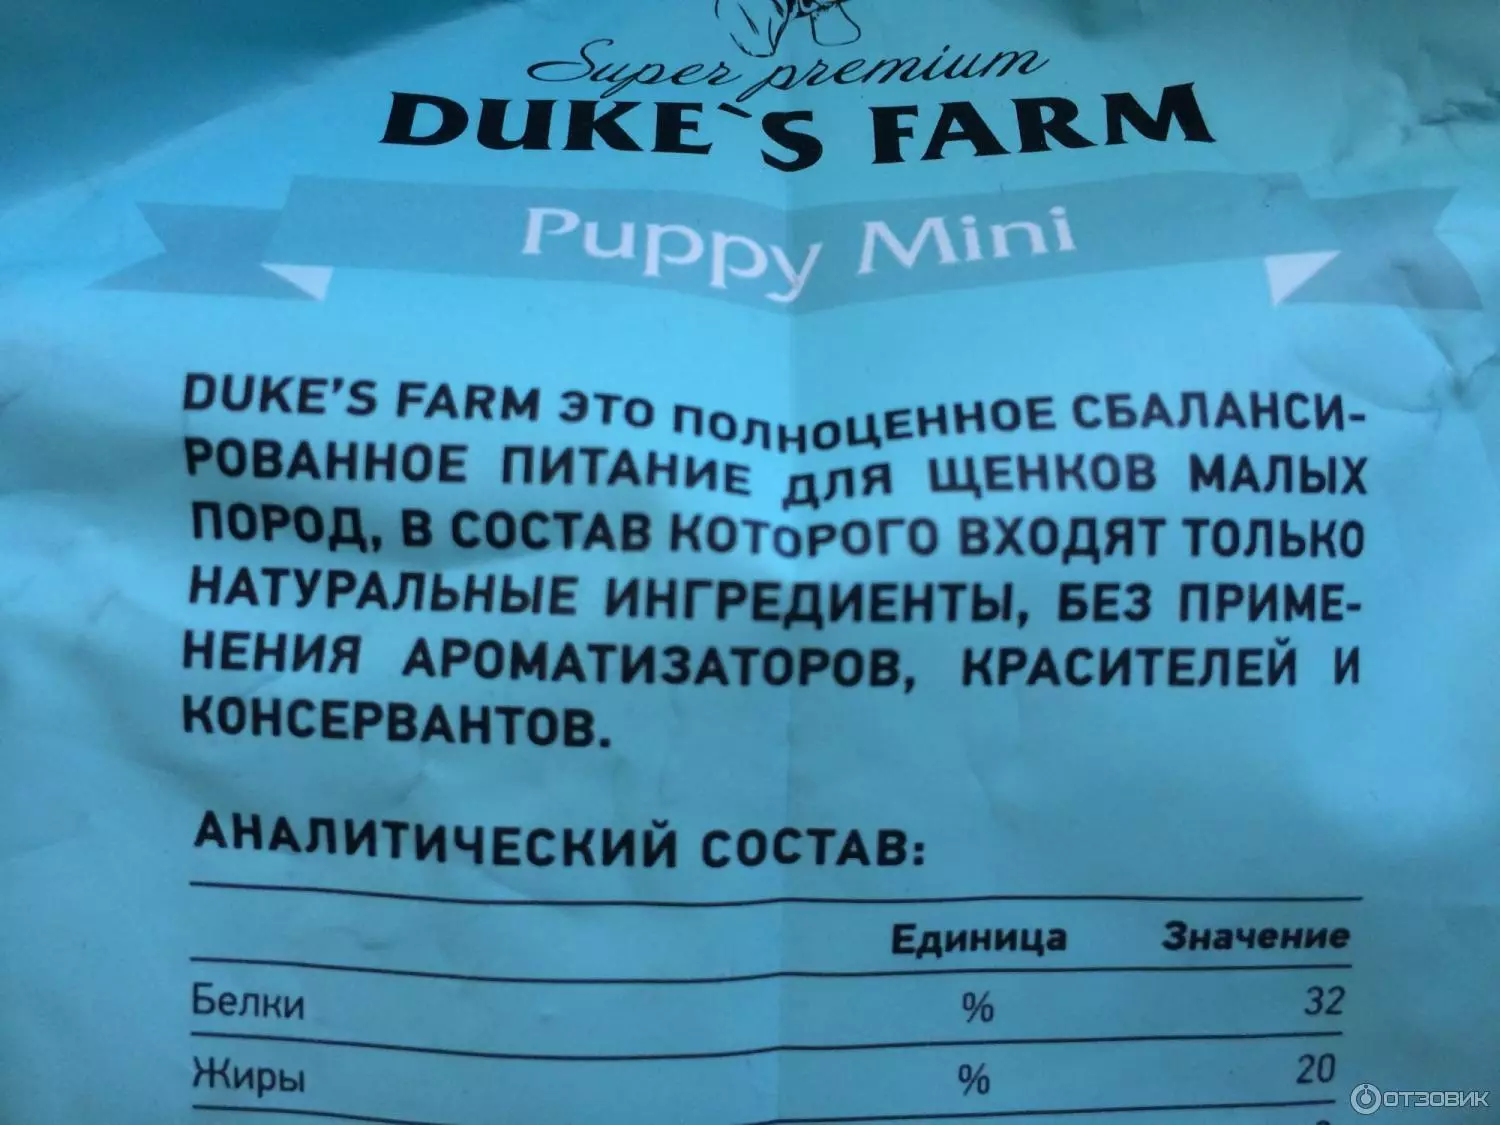 Duke's Farm Dog Feed: Fyrir hvolpa og hunda af stórum og öðrum kynjum, þurrmat 12 kg og blautur, eldingar fæða. Skoðaðu umsagnir 25076_7